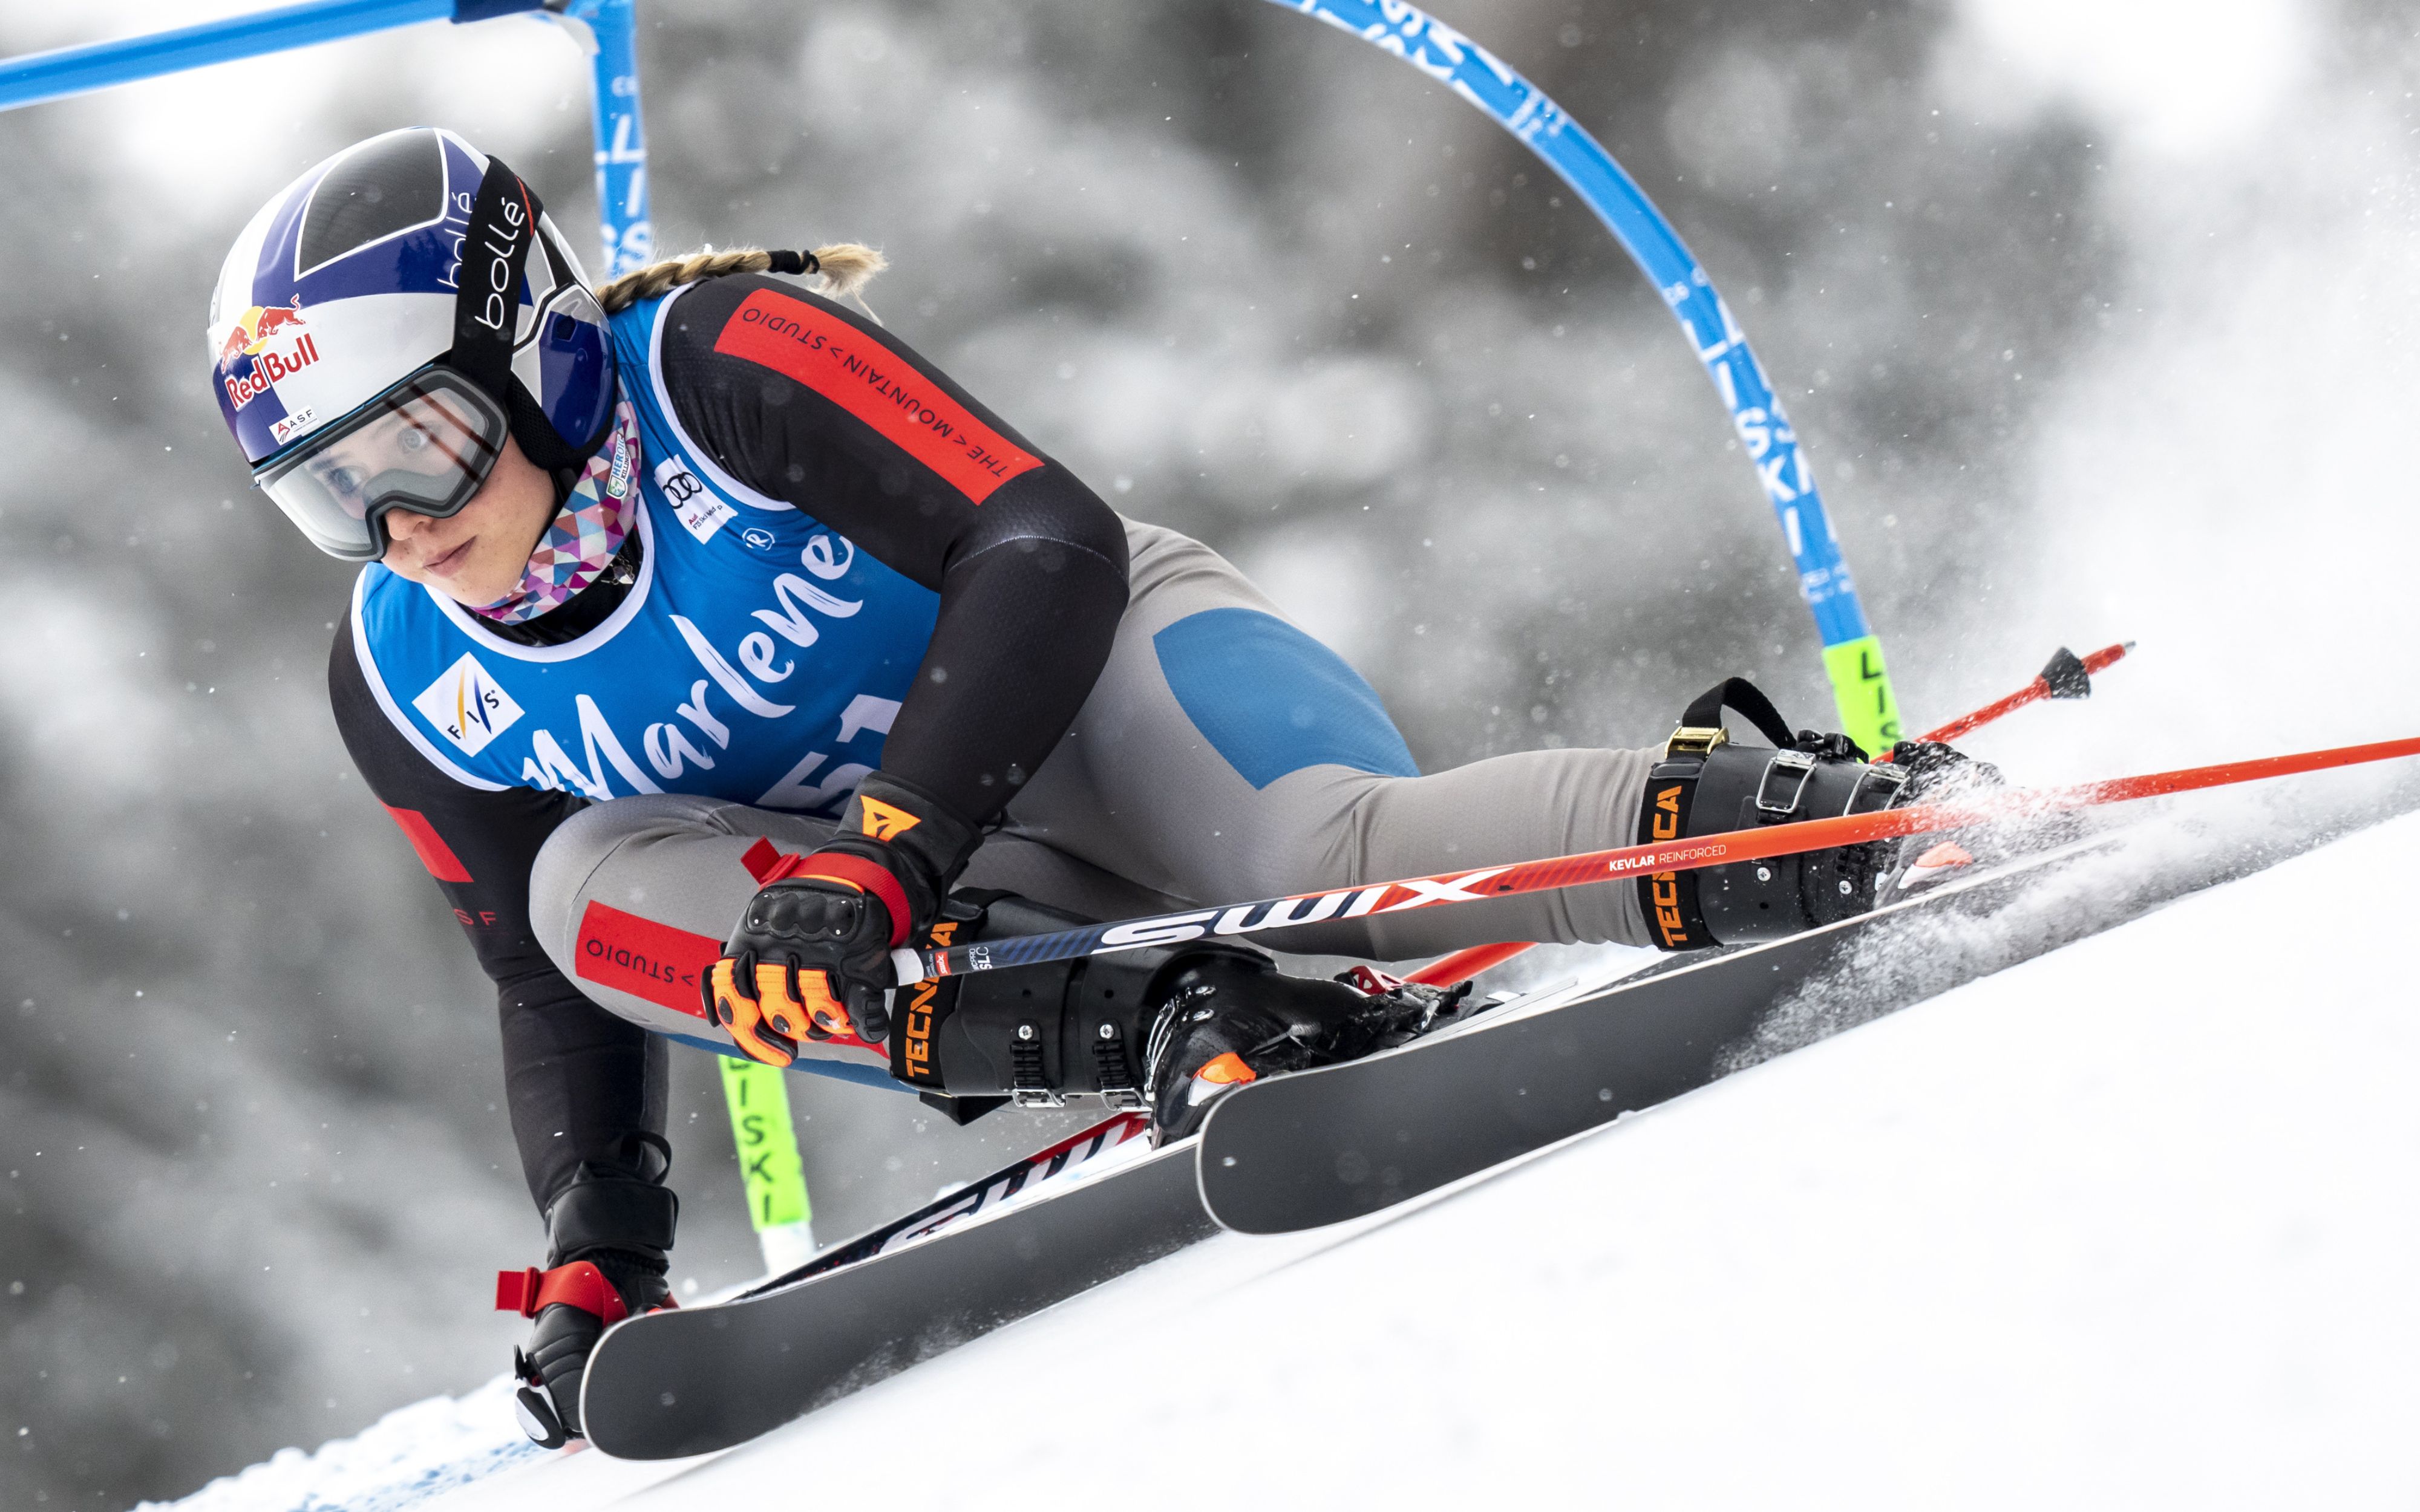 Test Toko Étaux ski alpin